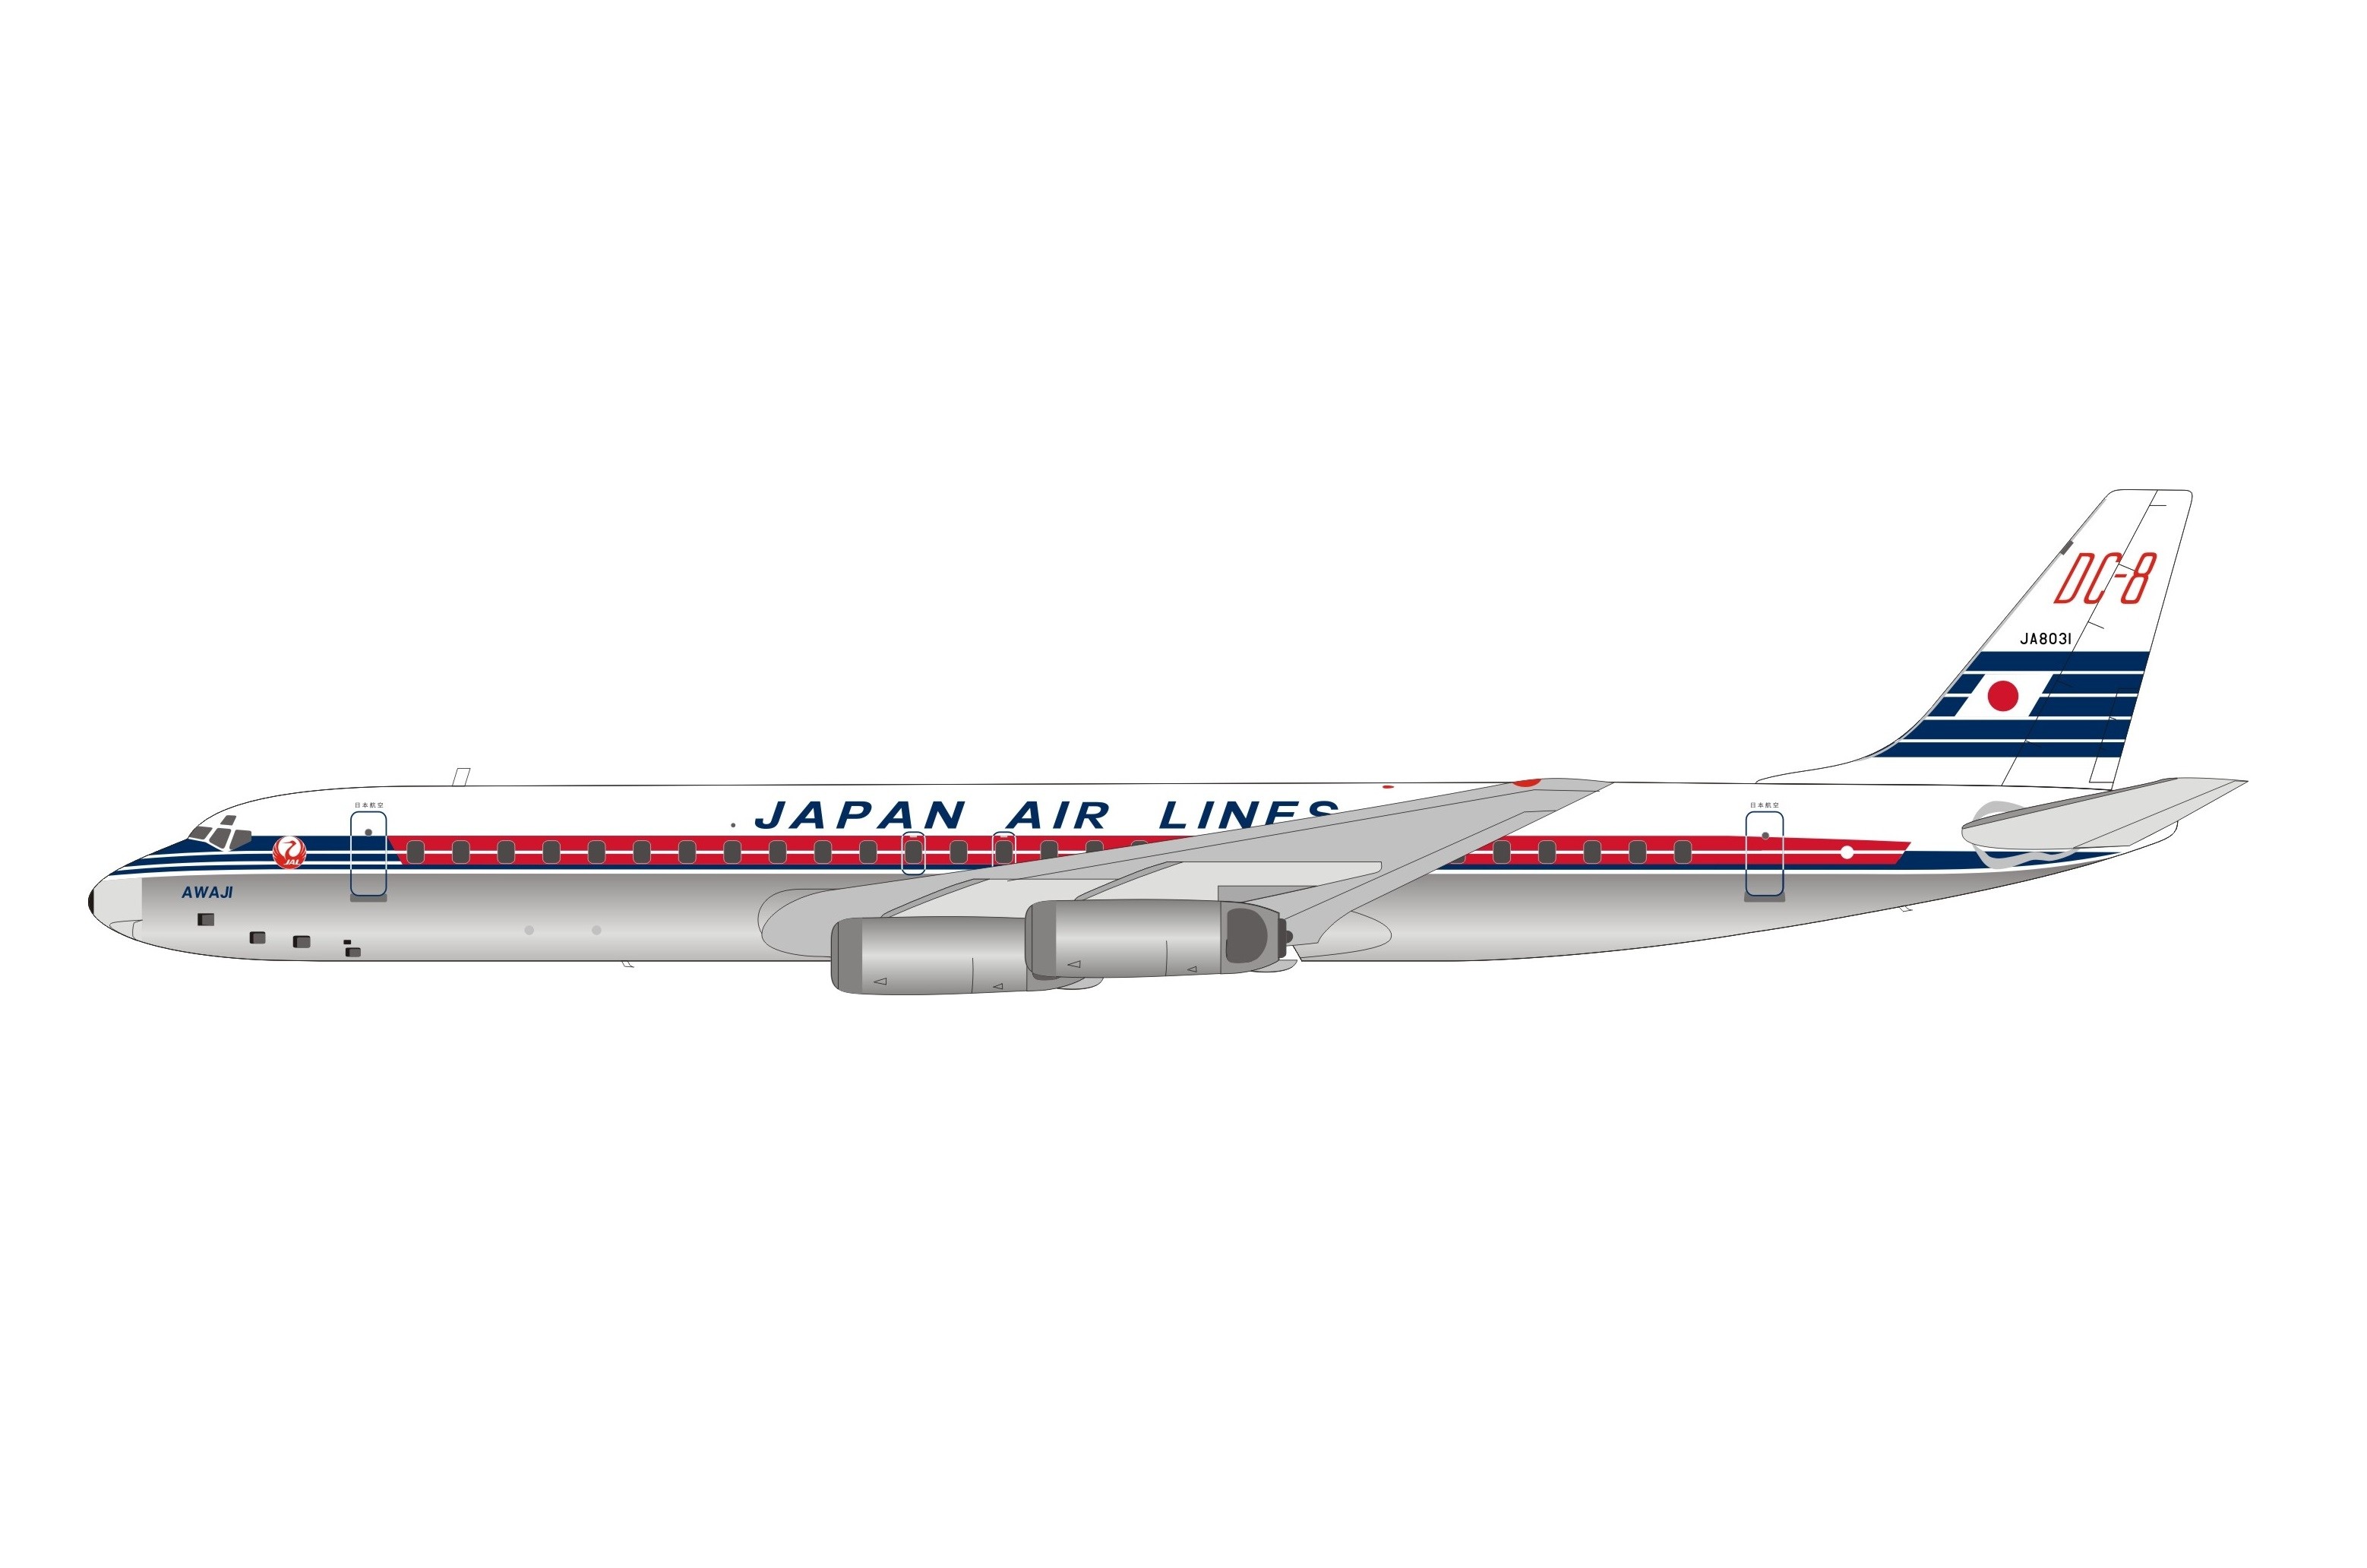 ダイキャスト 飛行機 1/200 JAL 日本航空 DC-8 絶版 JA8038-